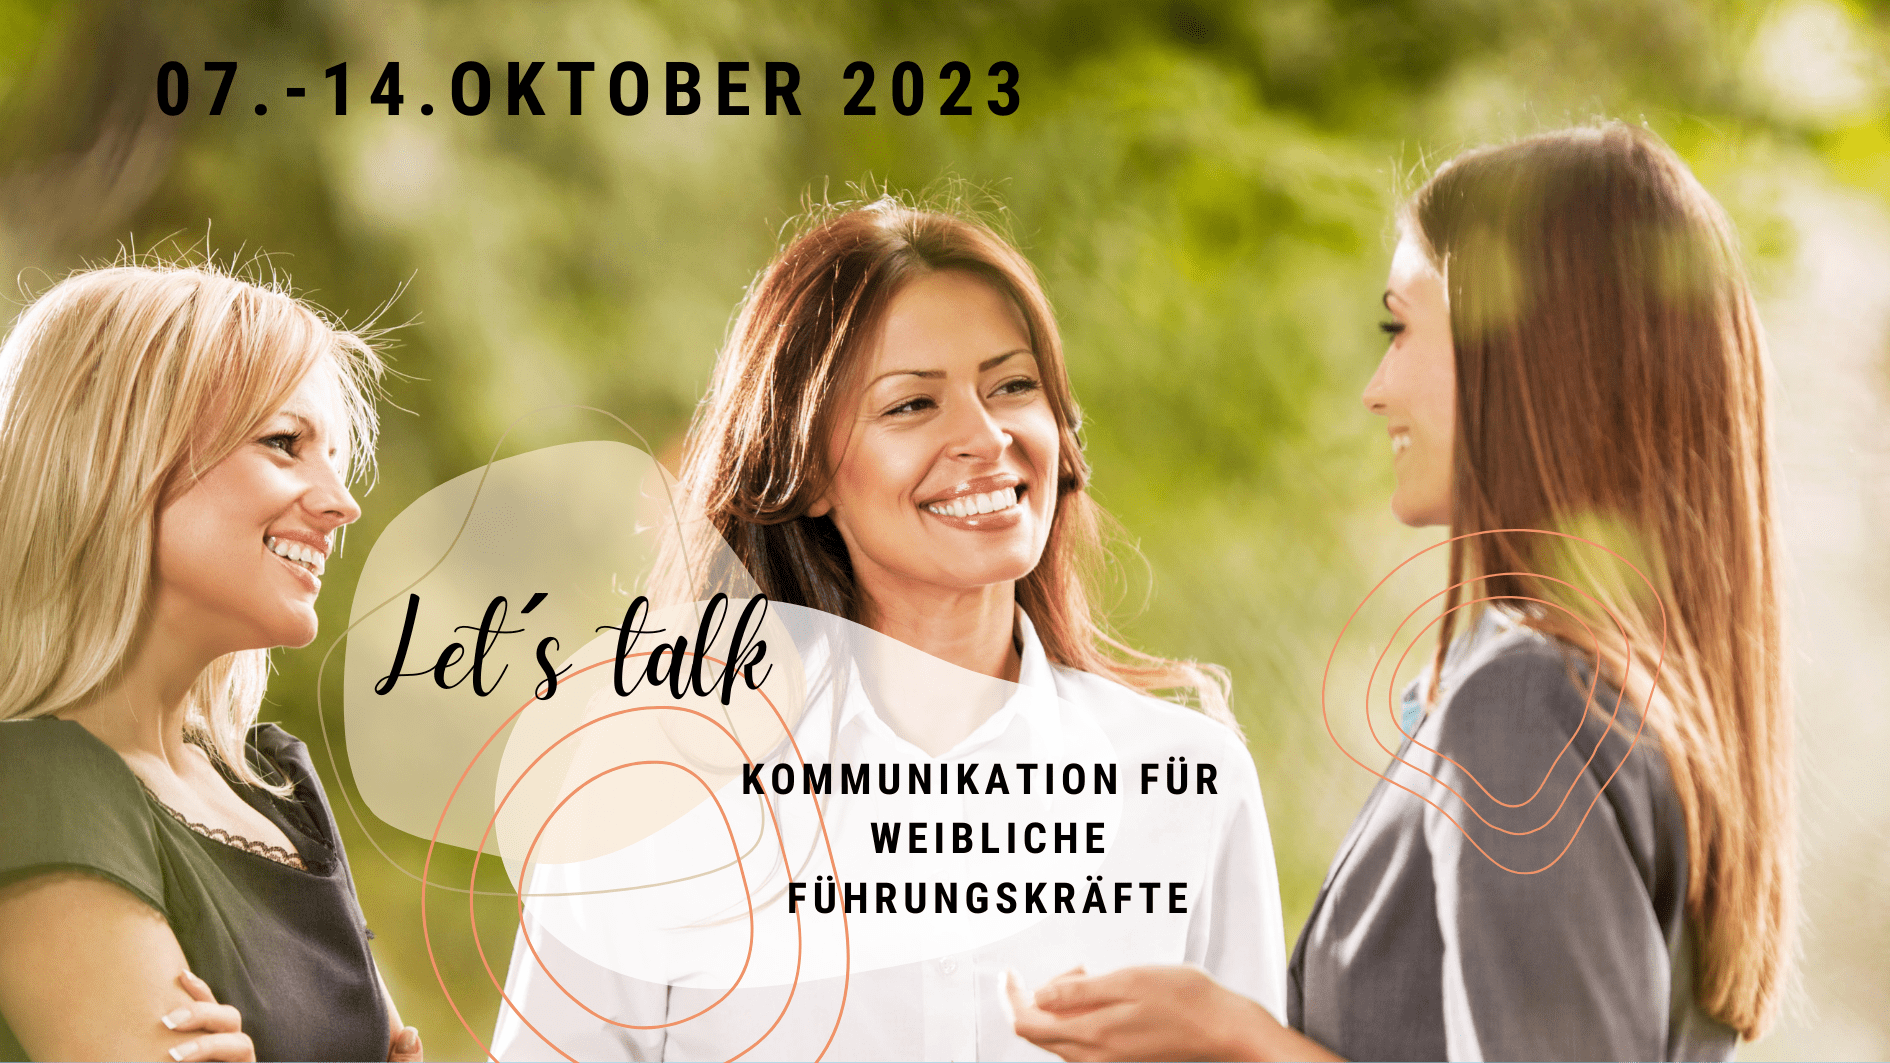 You are currently viewing Let’s talk – Kommunikation für weibliche Führungskräfte 07. – 14. Oktober 2023